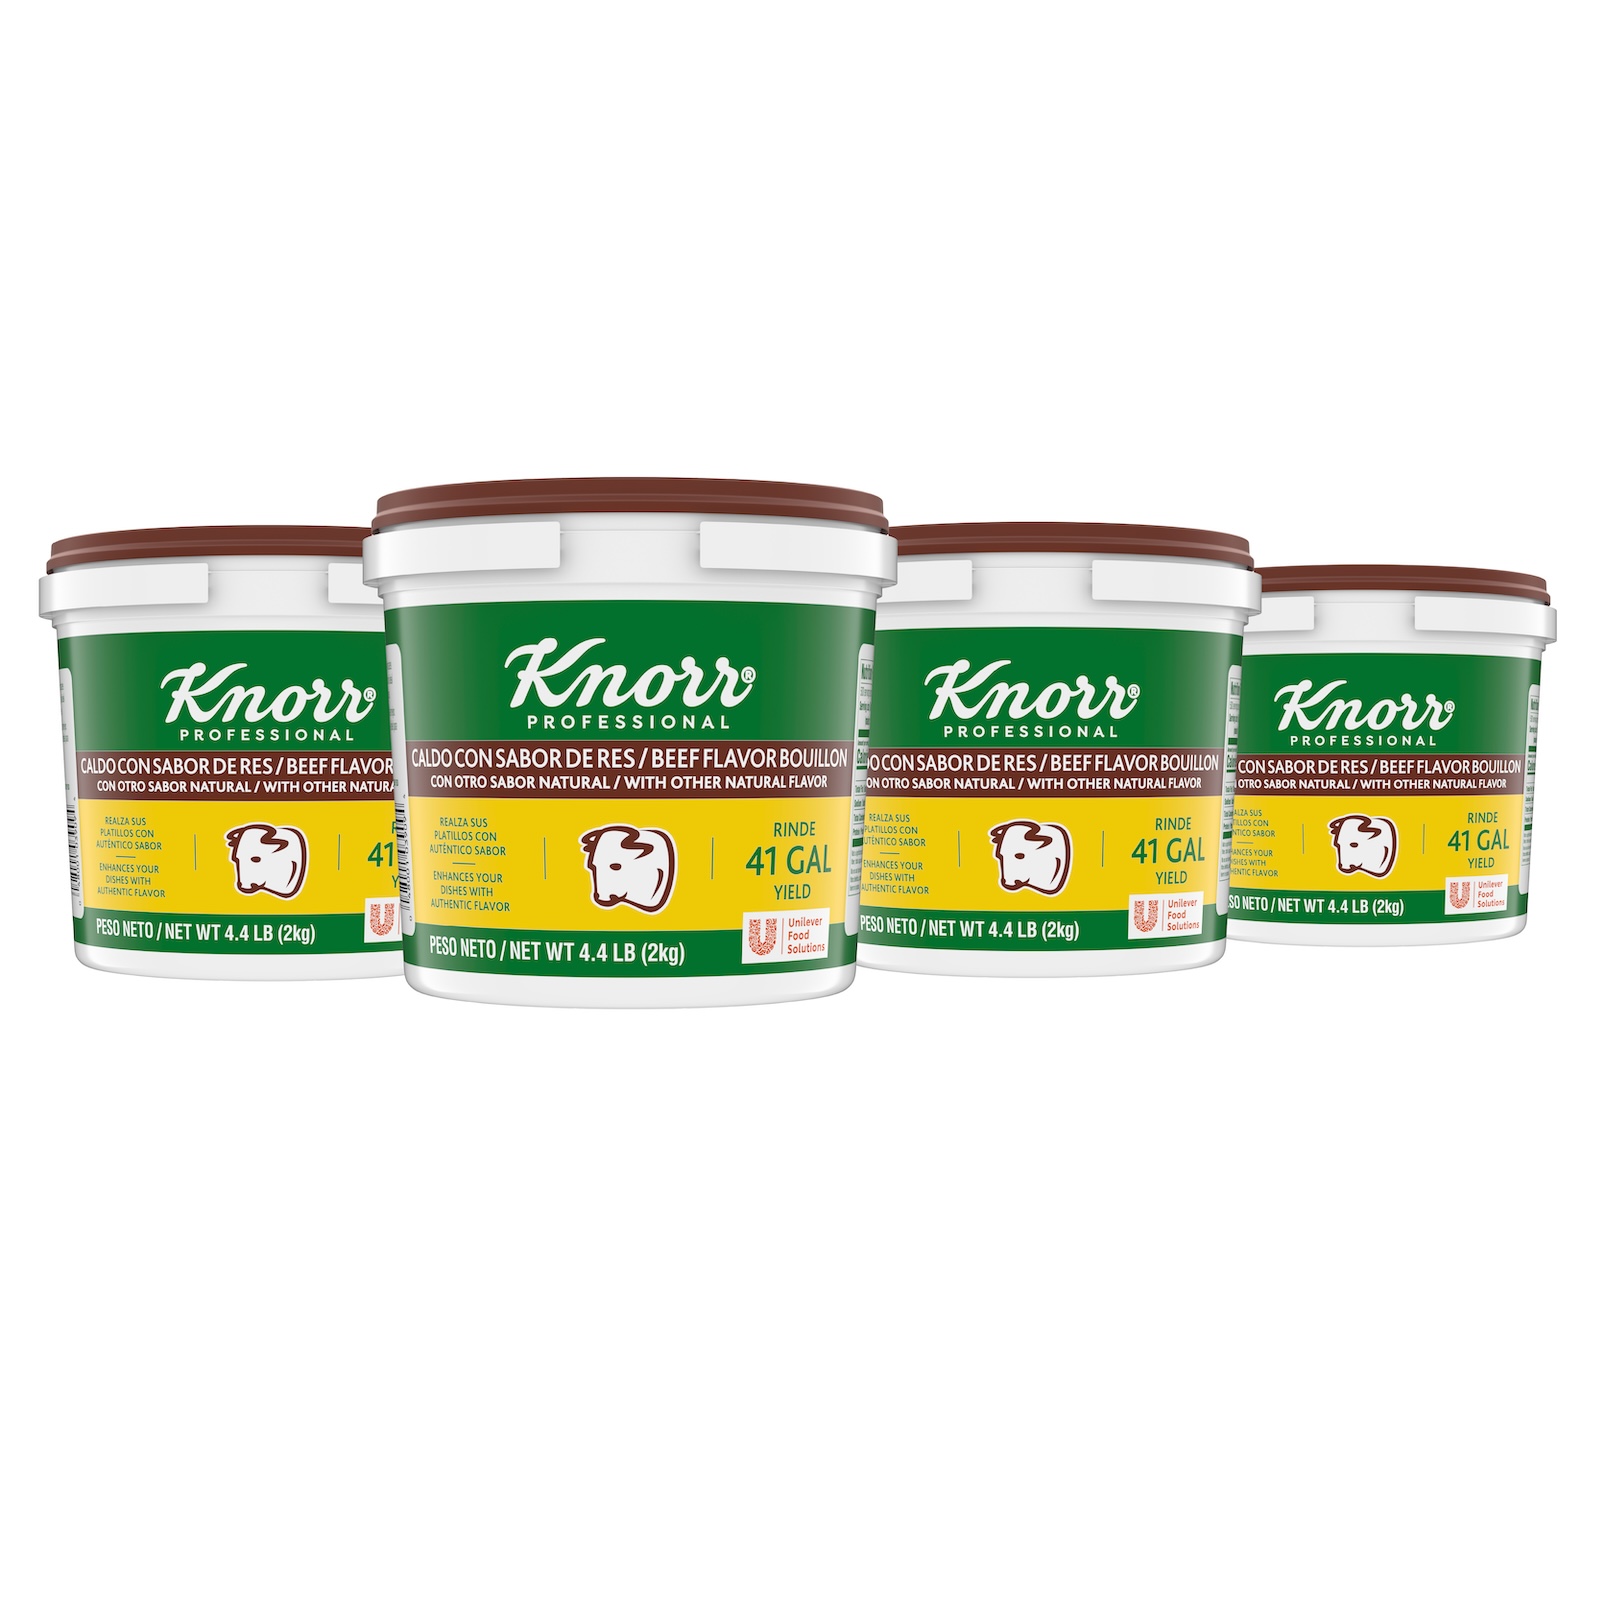 Knorr Professional Caldo De Res Beef Bouillon Base, 4.4 pound -- 4 per case